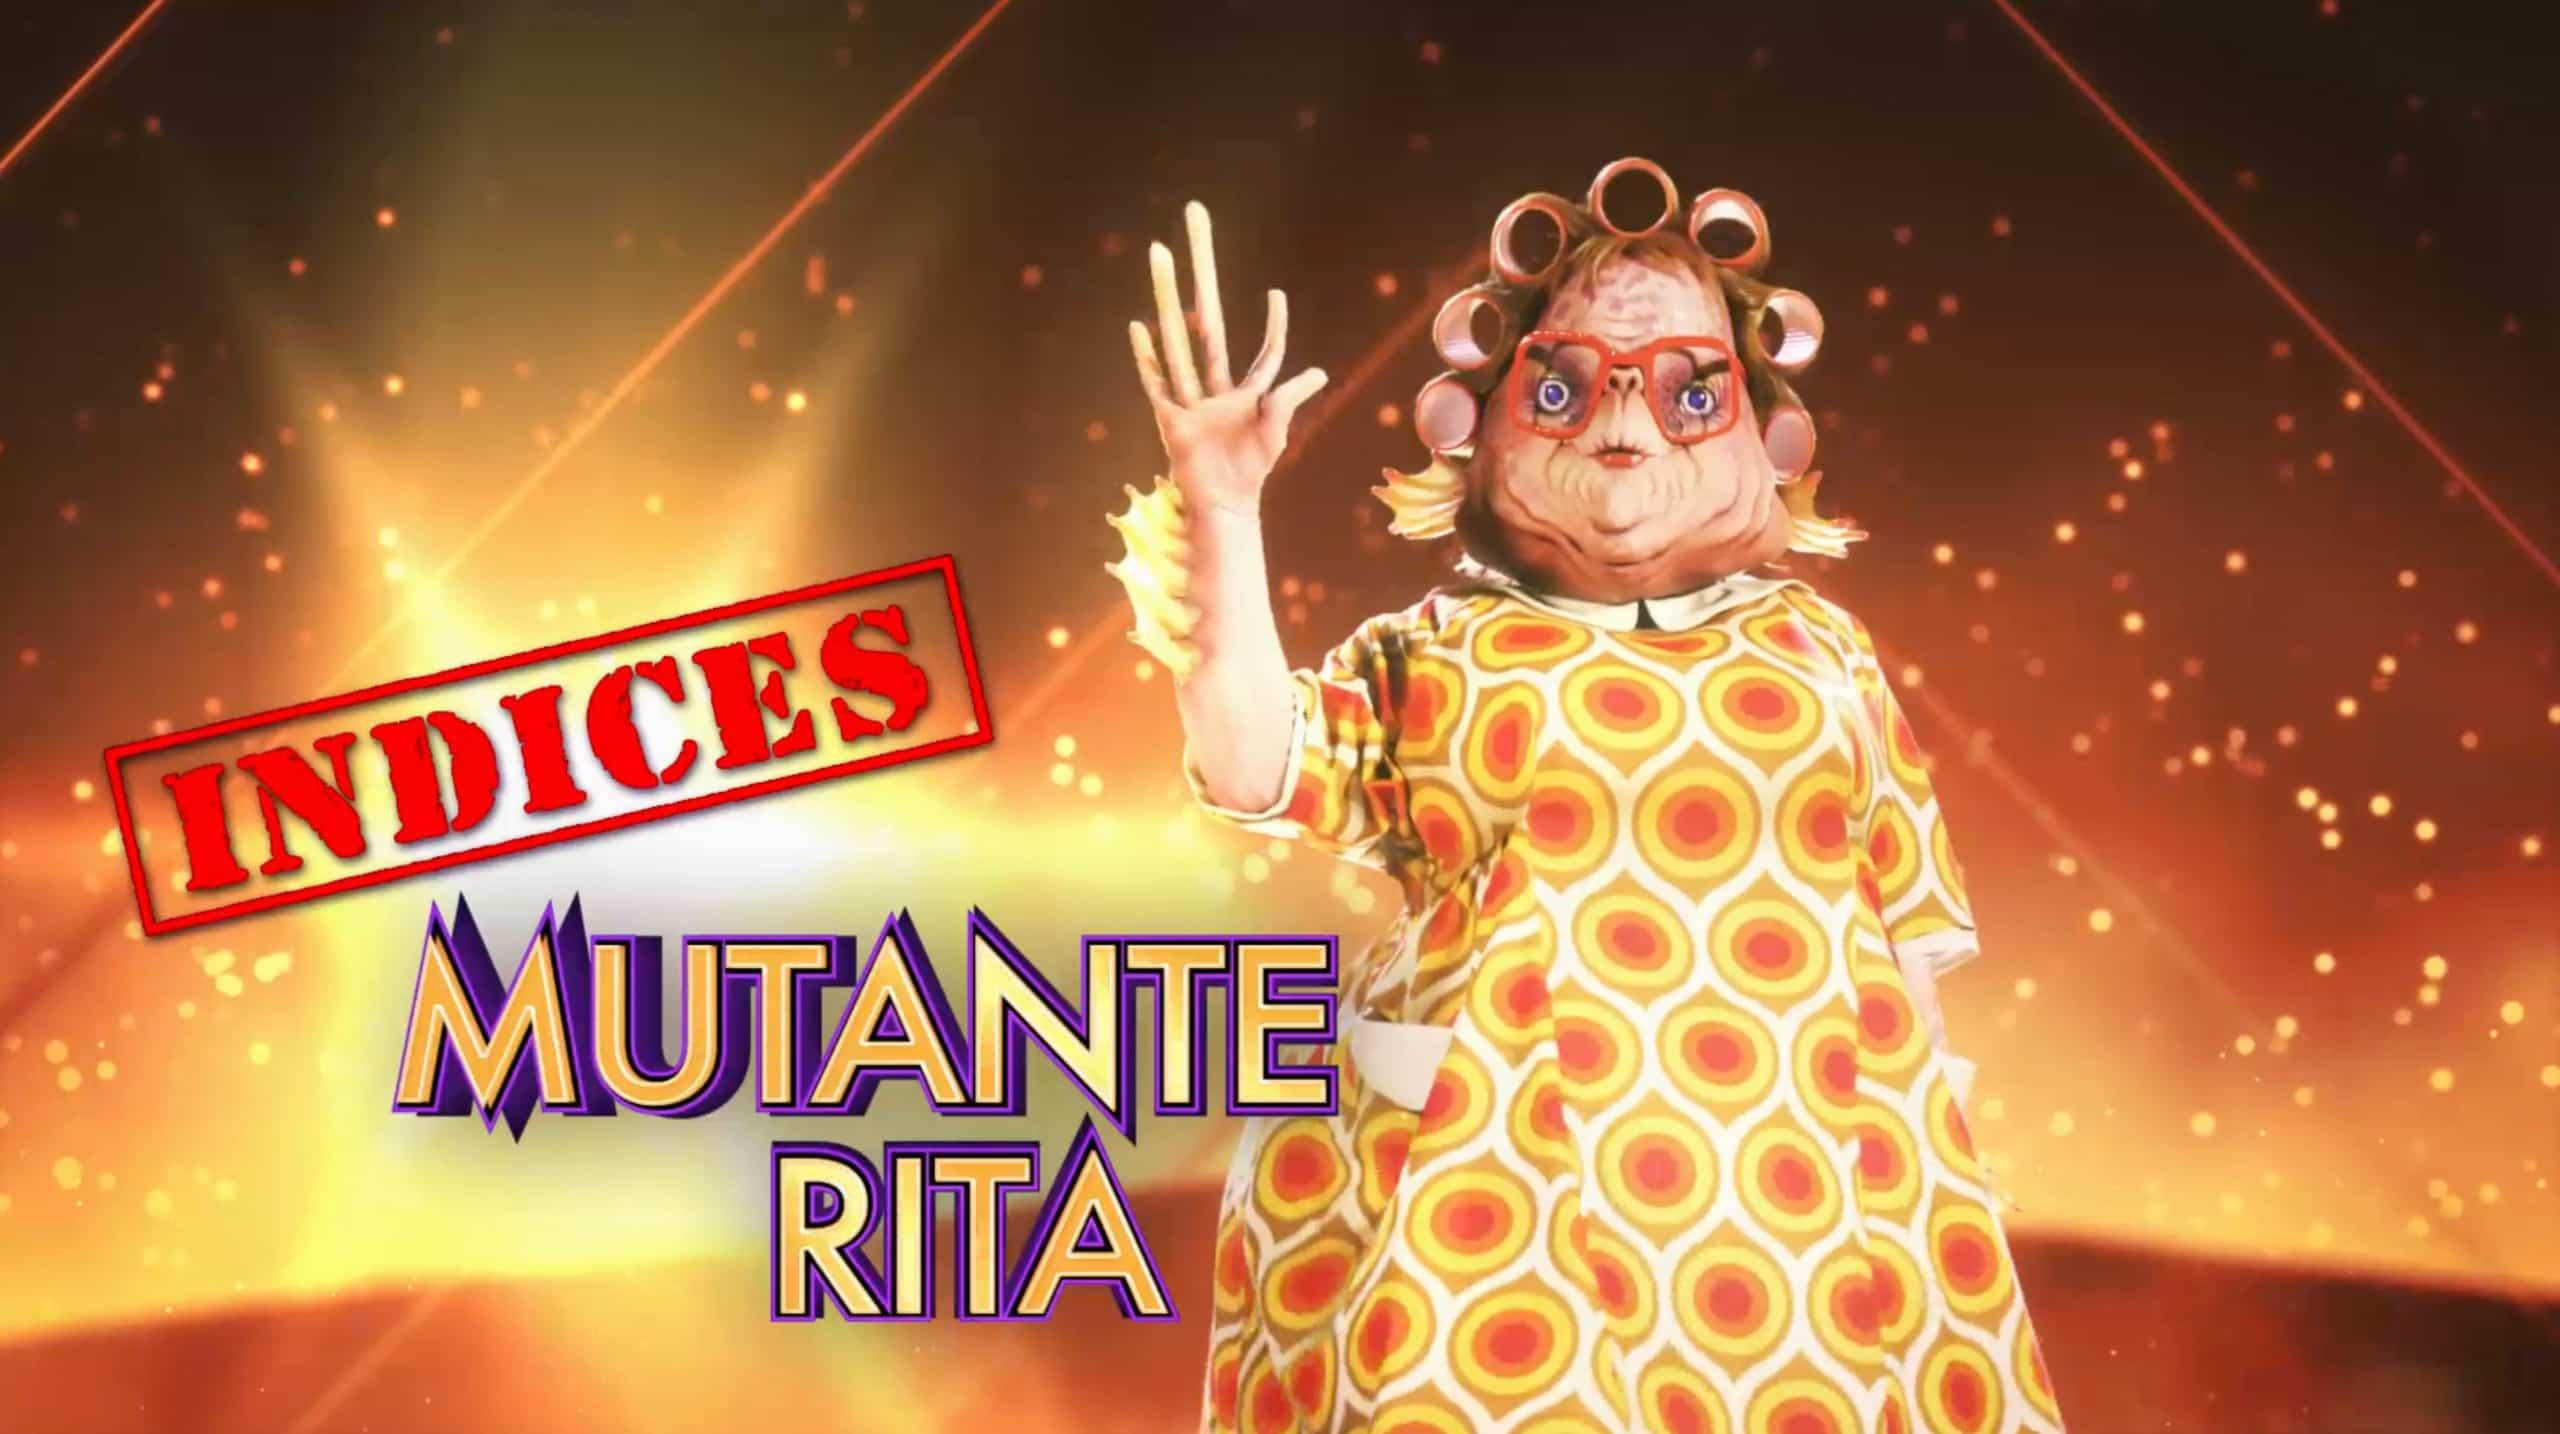 Mutante Rita - Indices 7